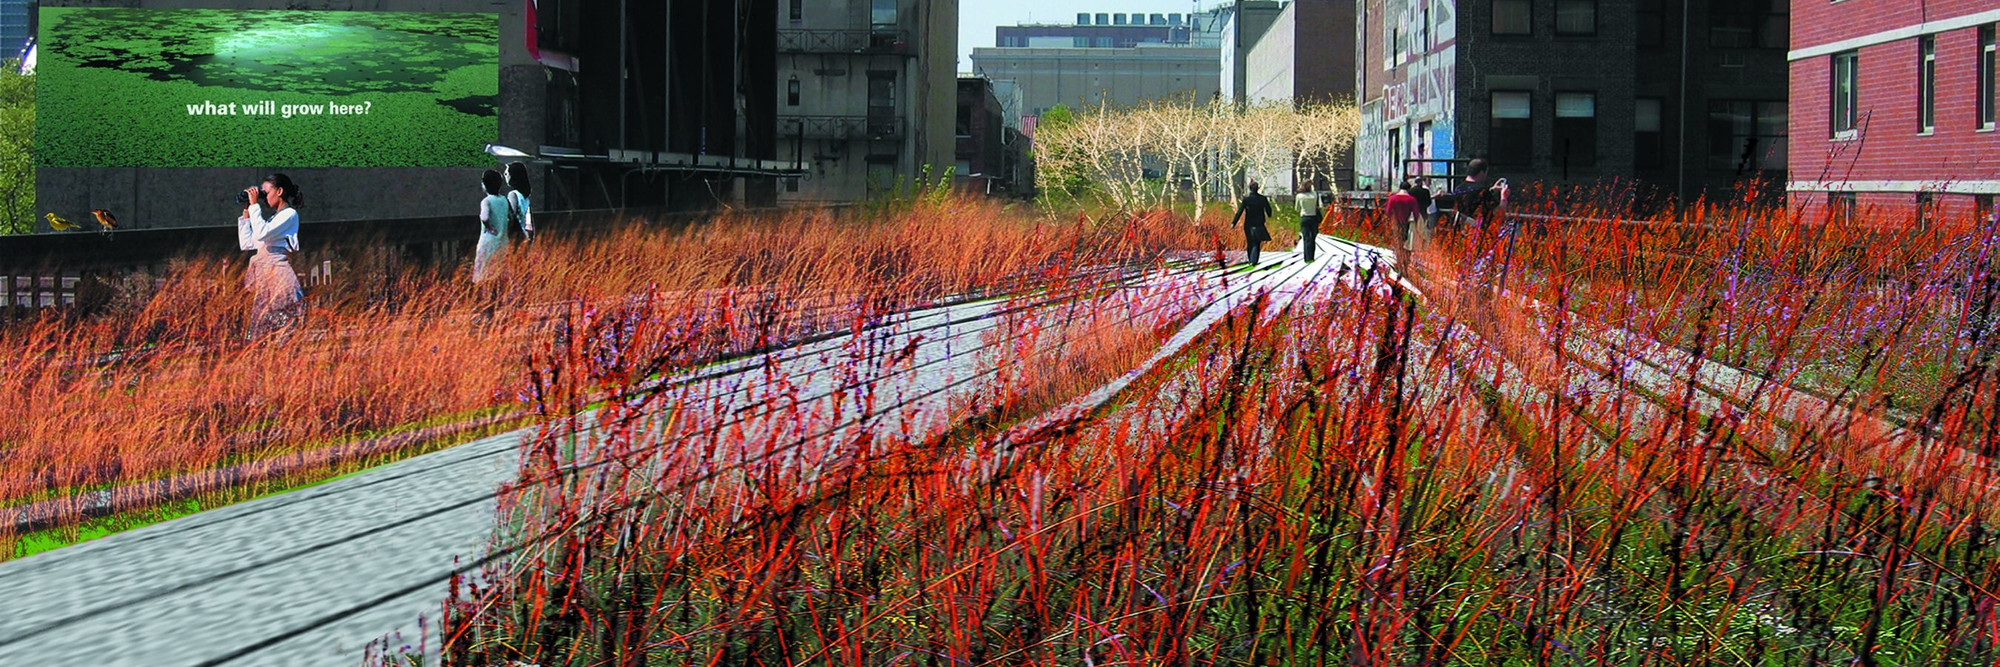 The High Line - Diller Scofidio + Renfro